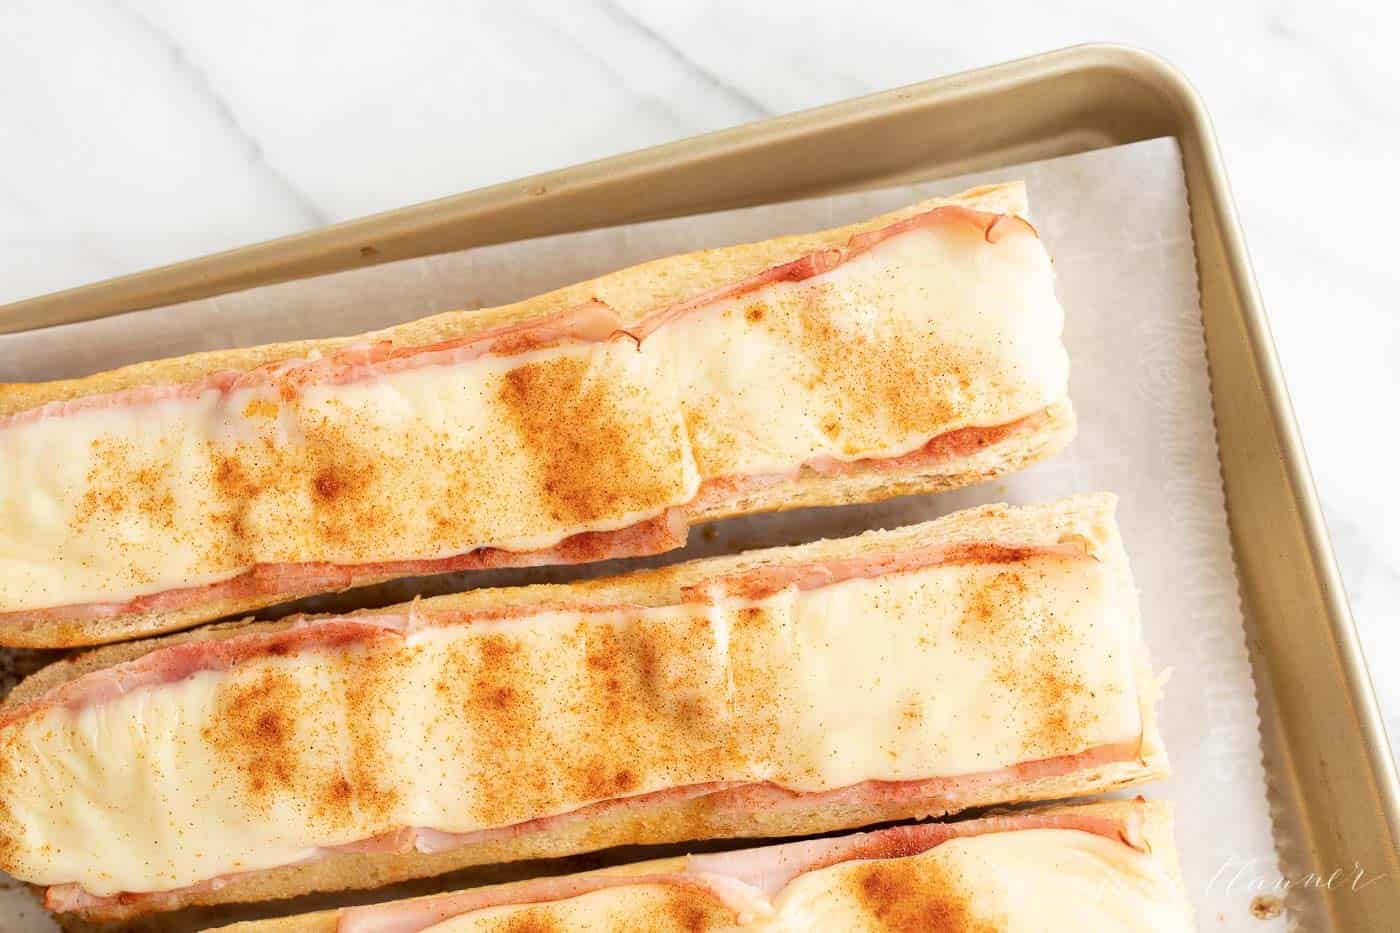 gerber sandwiches on baking sheet